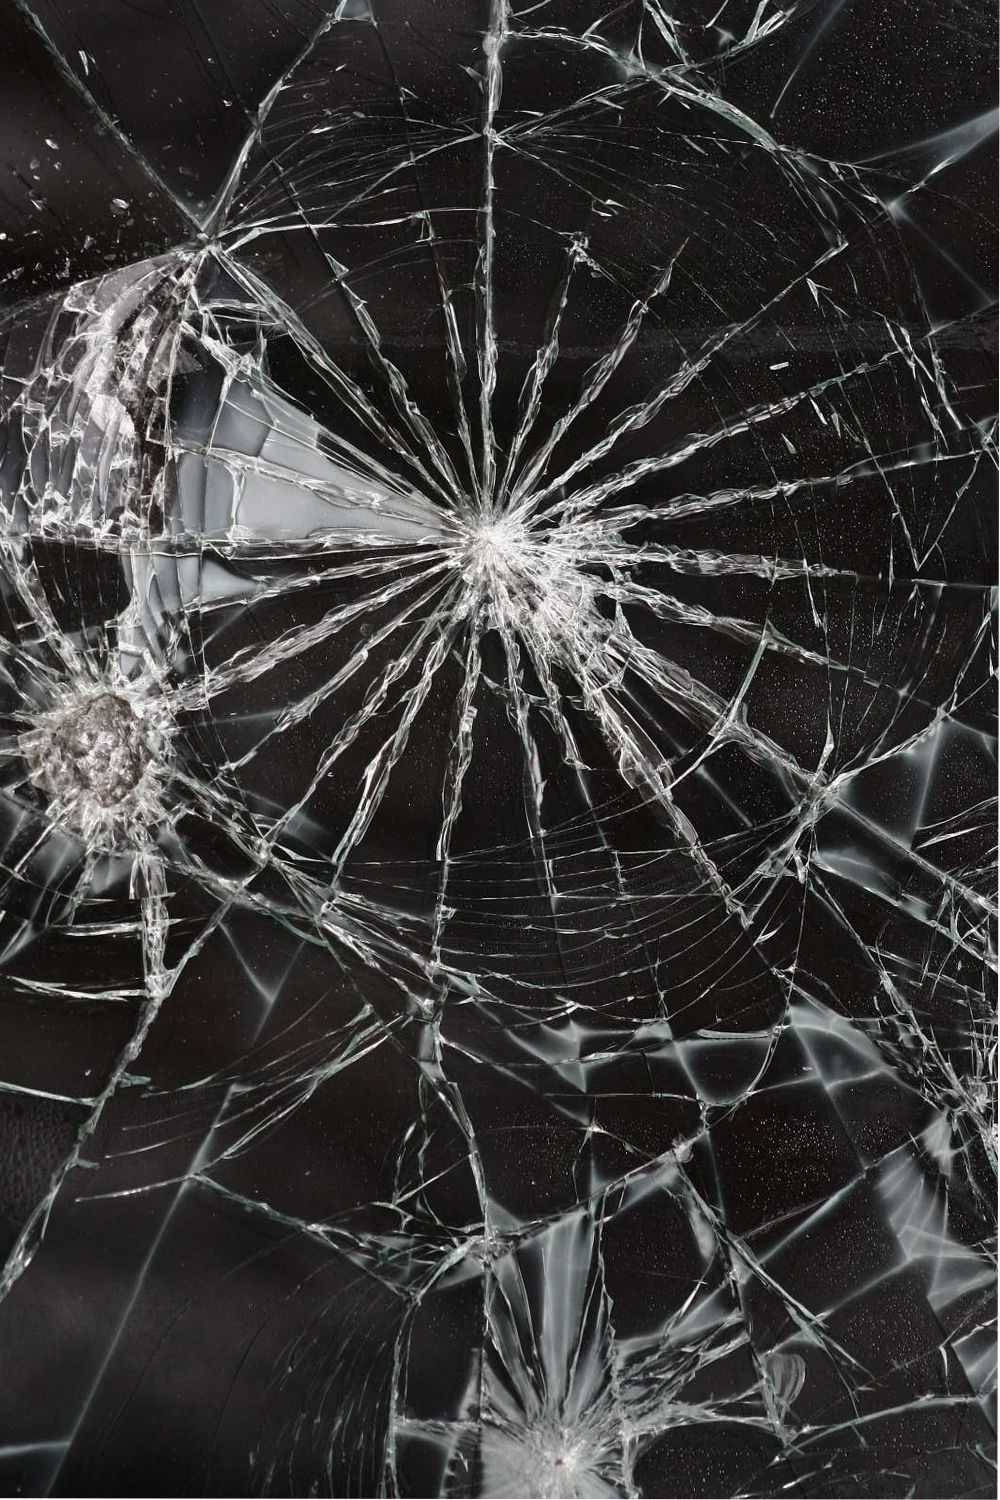 100+] Broken Glass Wallpapers 